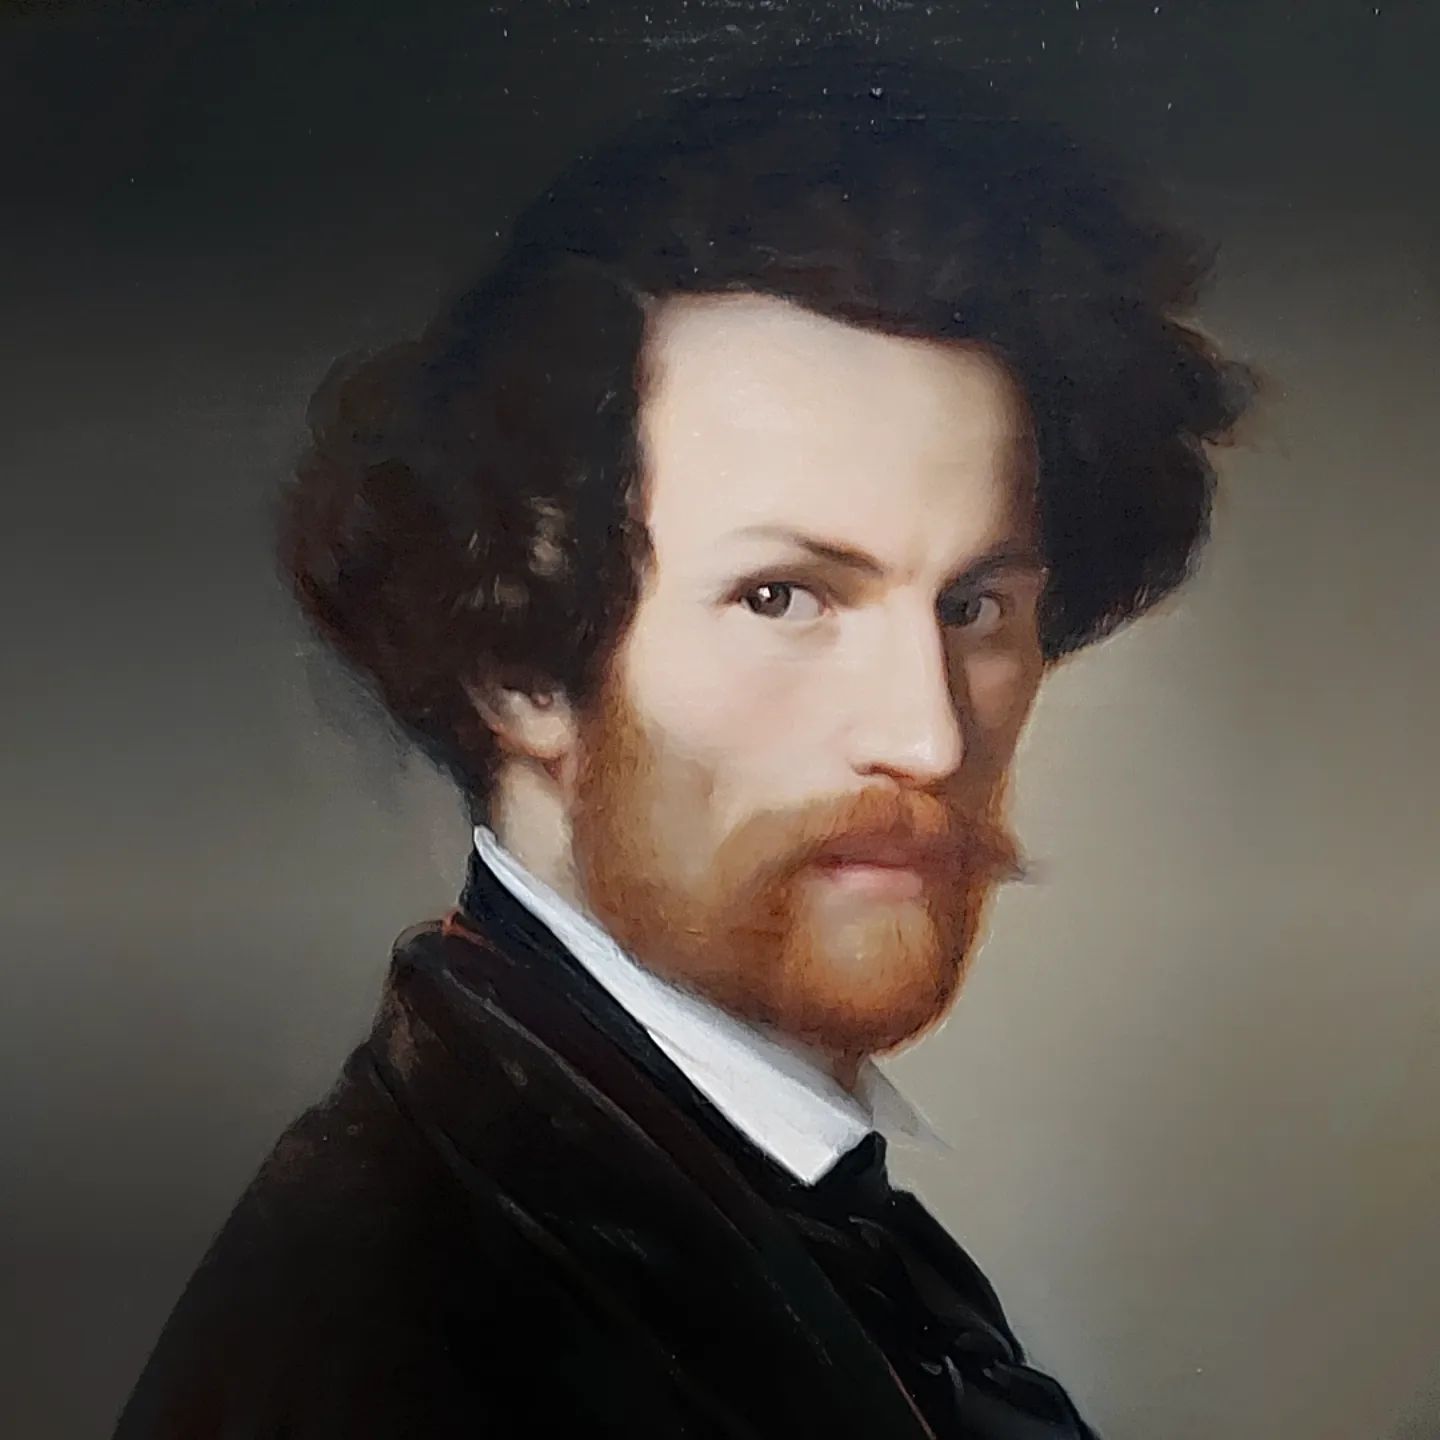 Alexander Heuvel self portrait 1846 #latvia #latvianart #latviannationalmuseumofart #romantic